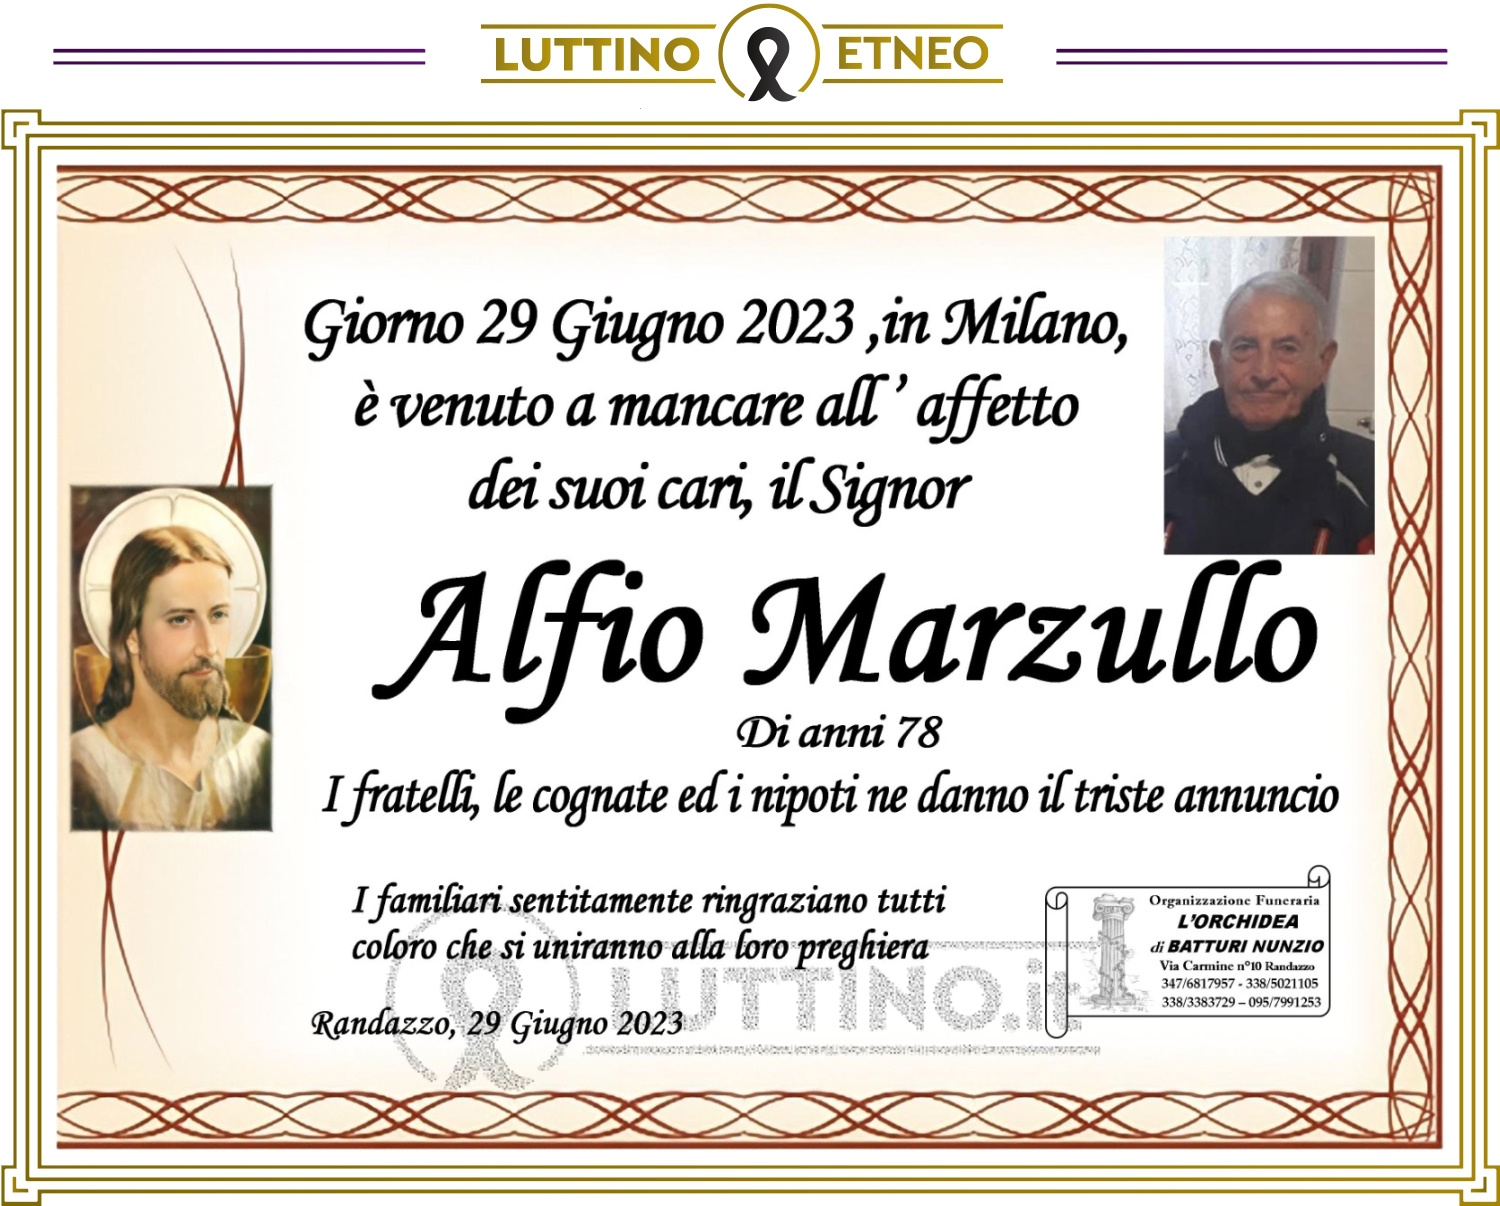 Alfio Marzullo